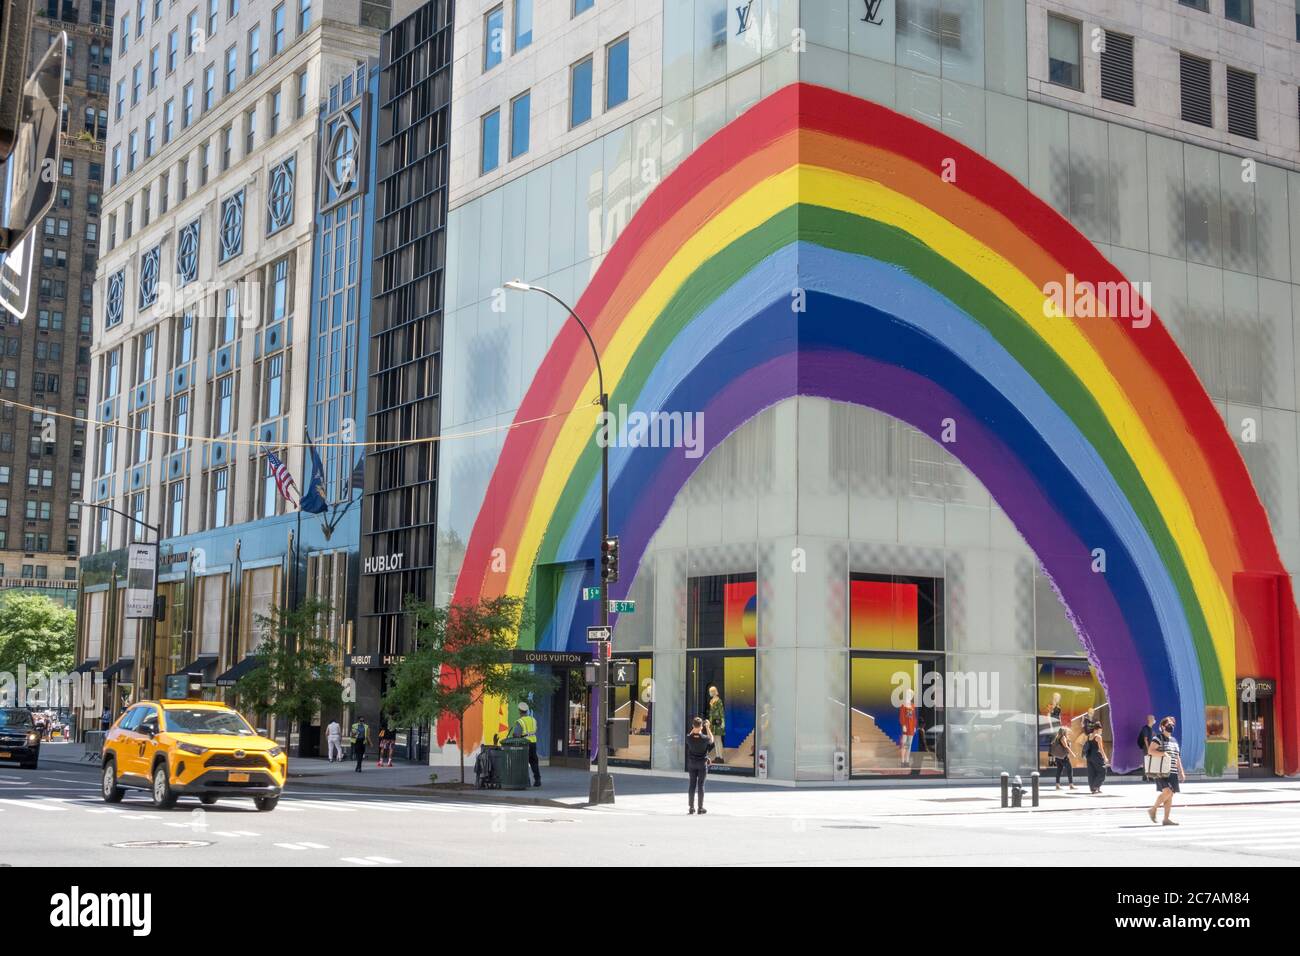 Louis Vuitton viert Pride-maand met regenboog op winkel New York